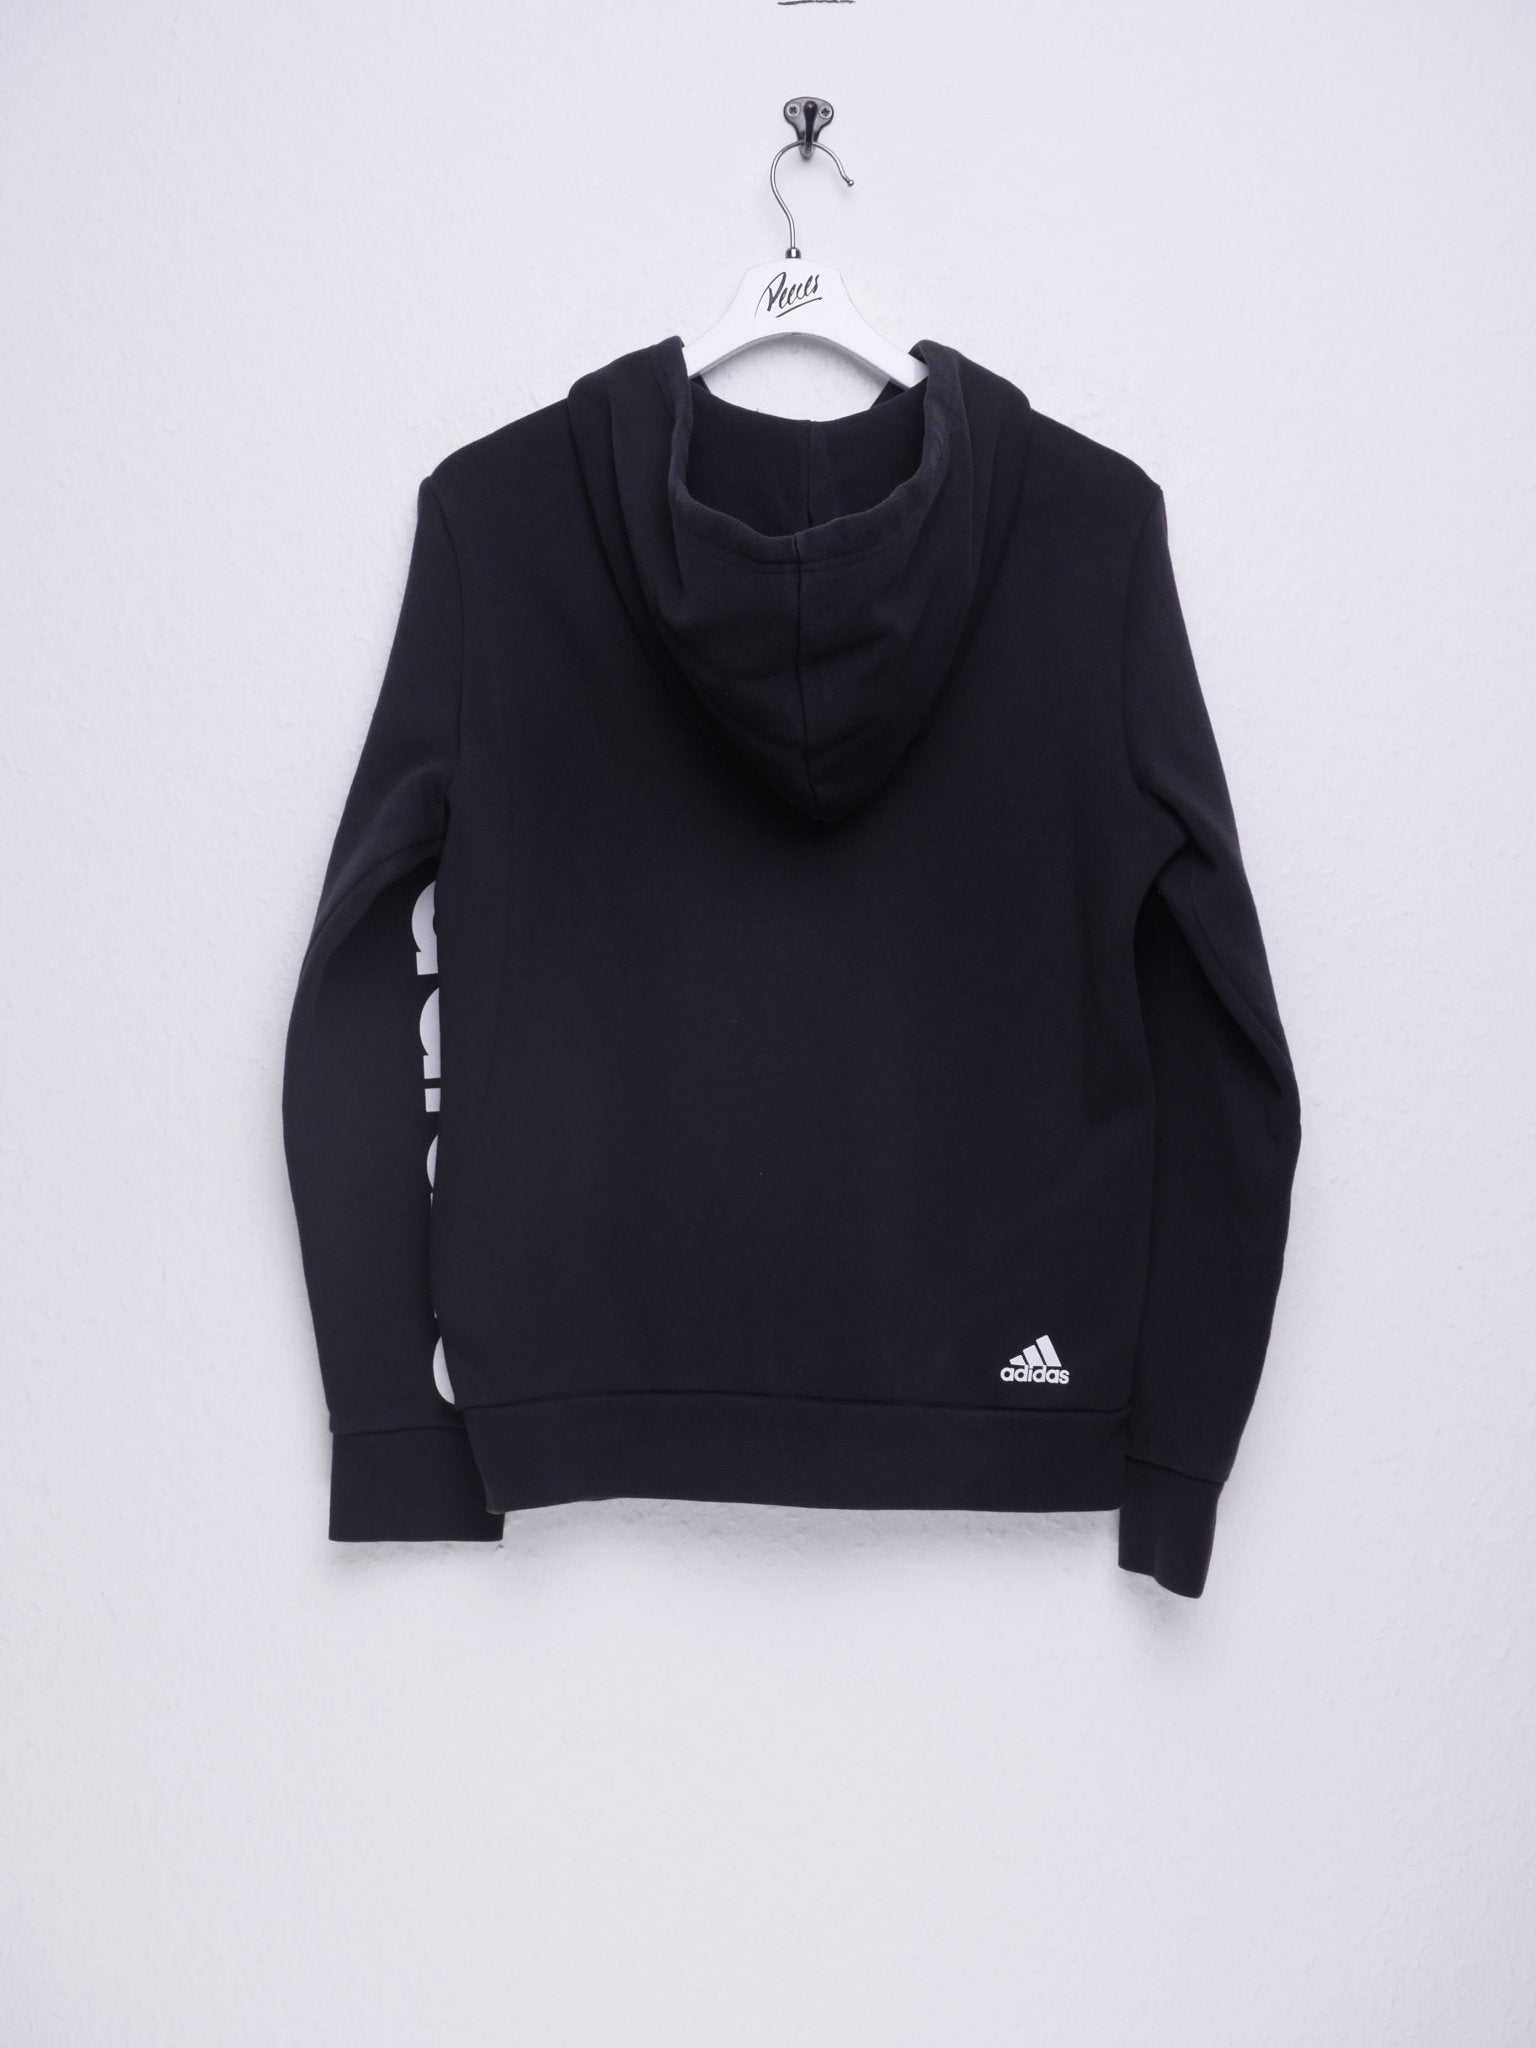 Adidas printed Logo black Full Zip Hoodie - Peeces